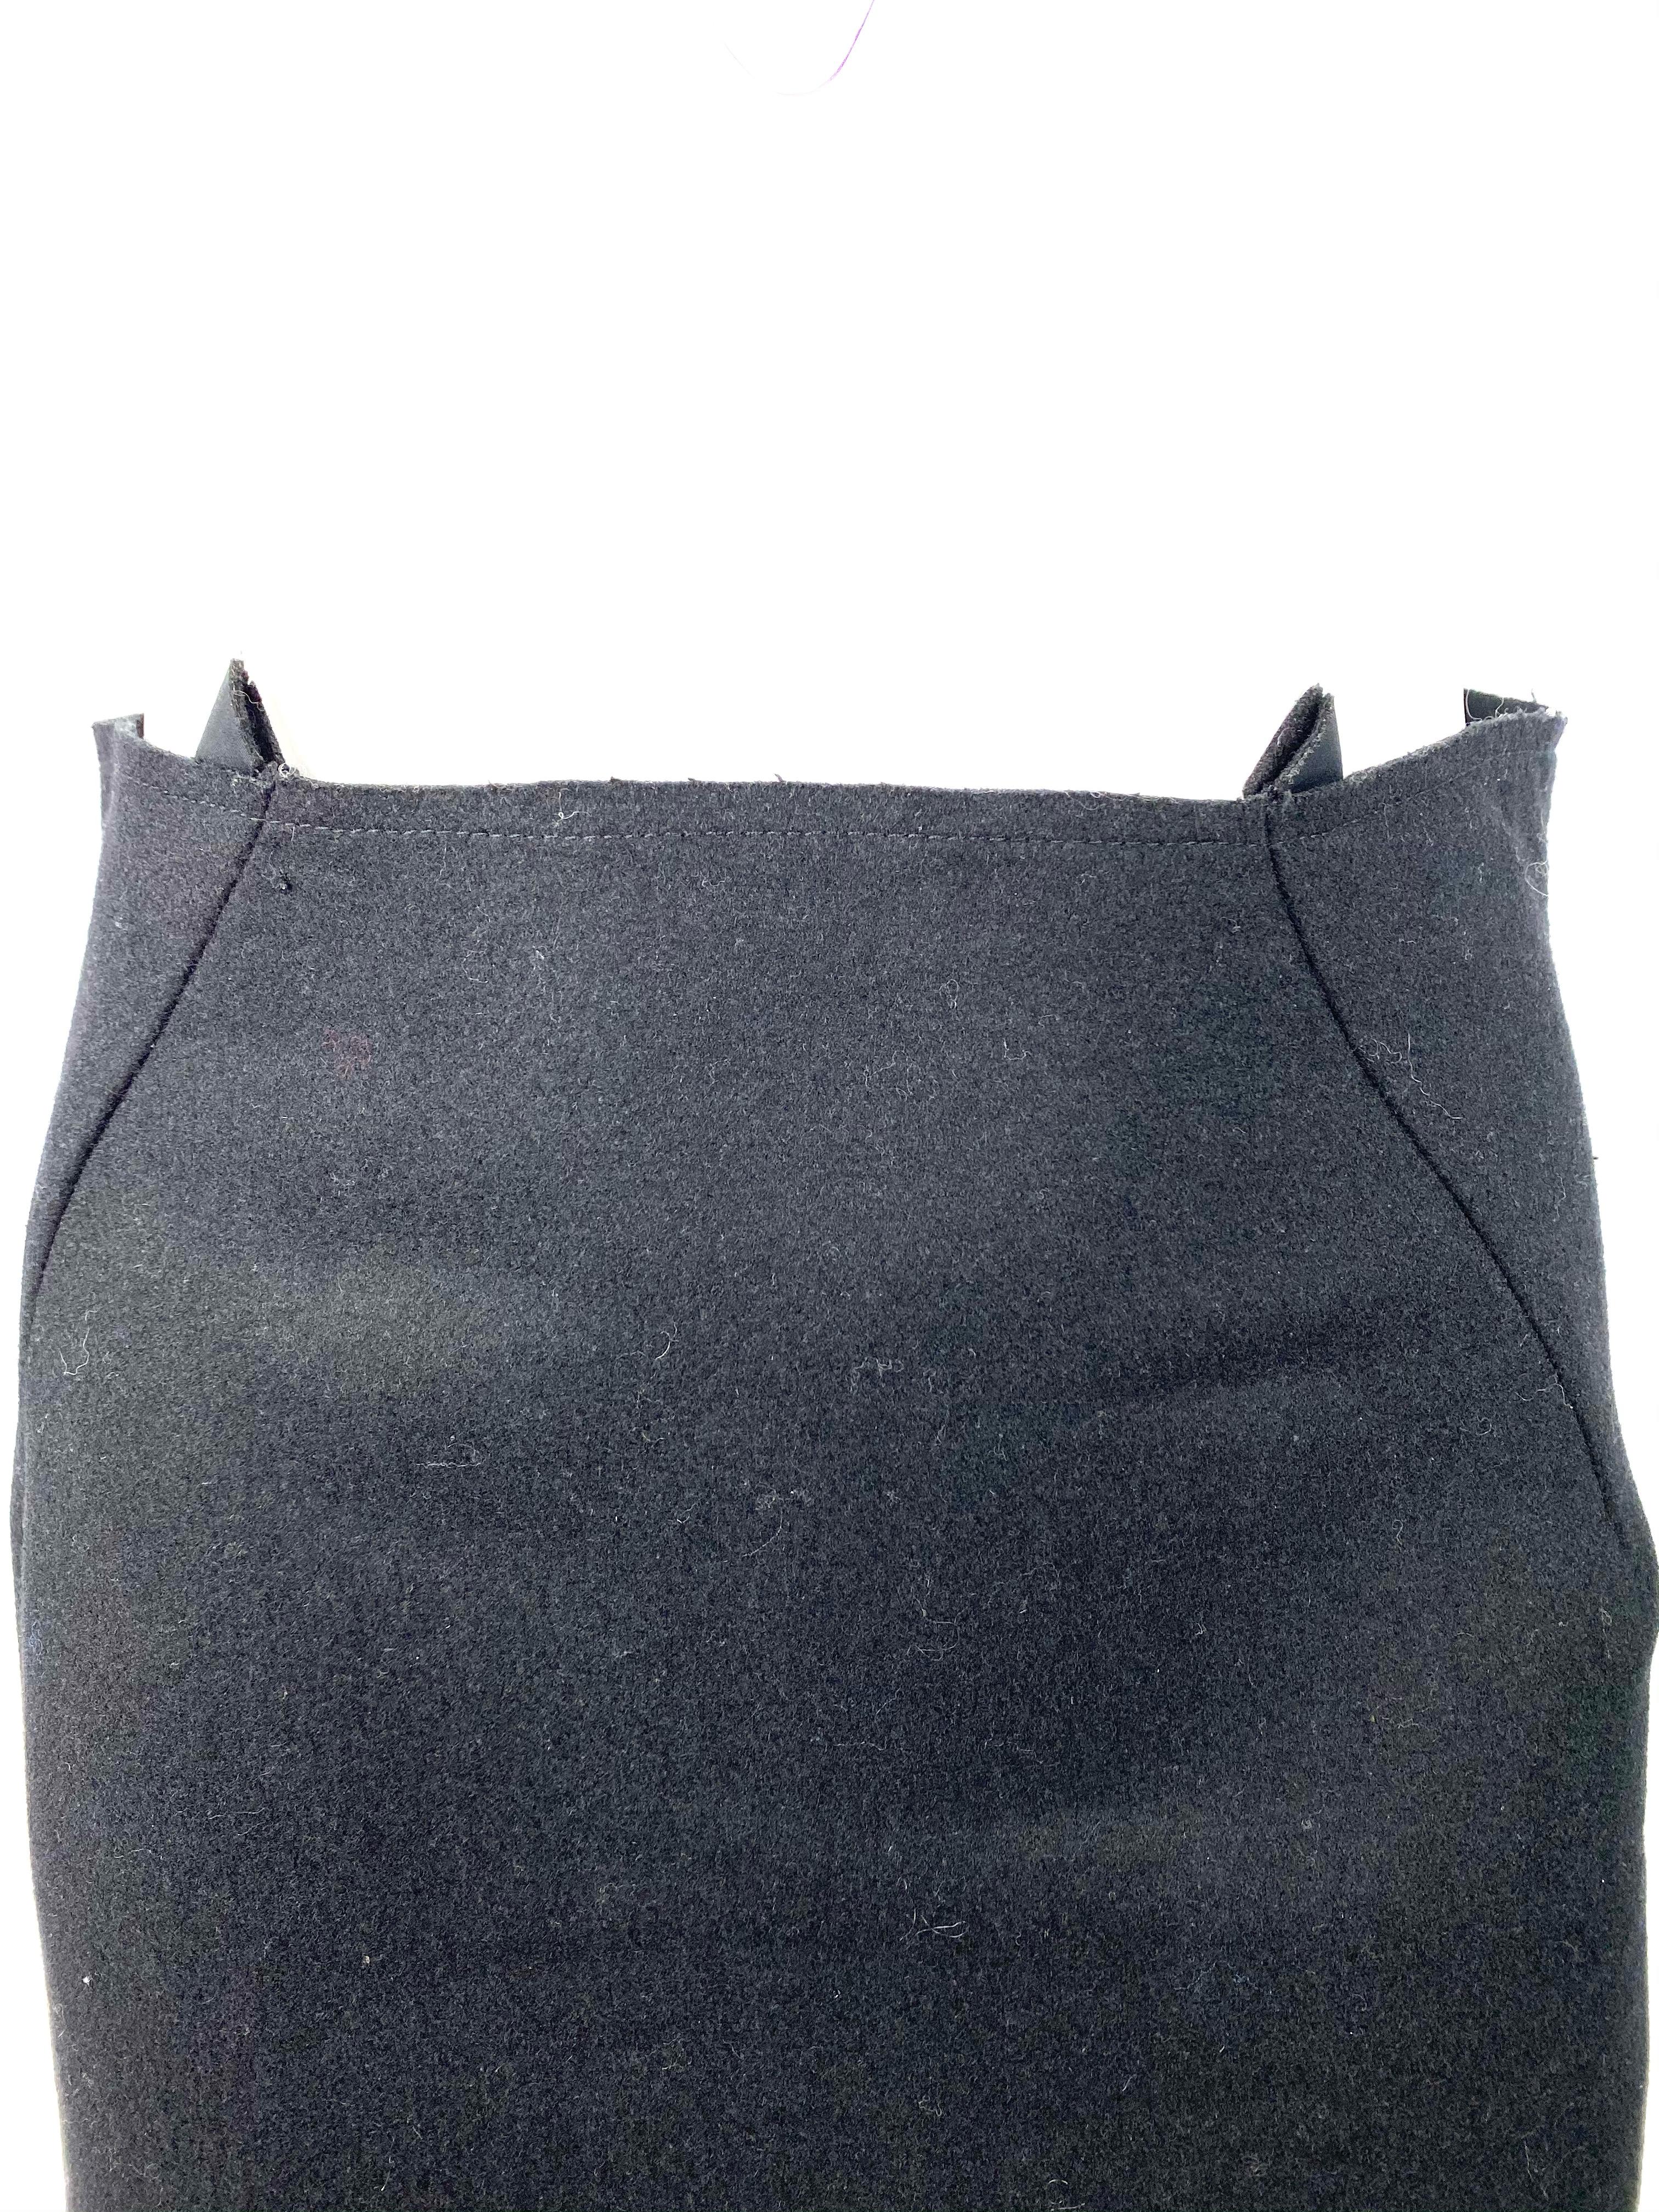 Détails du produit :

Jupe en laine noire de taille moyenne conçue par Nancy Stella Soto aux États-Unis. La jupe présente un style crayon avec des découpes géométriques carrées sur le bas et une fermeture à glissière arrière dissimulée, longueur